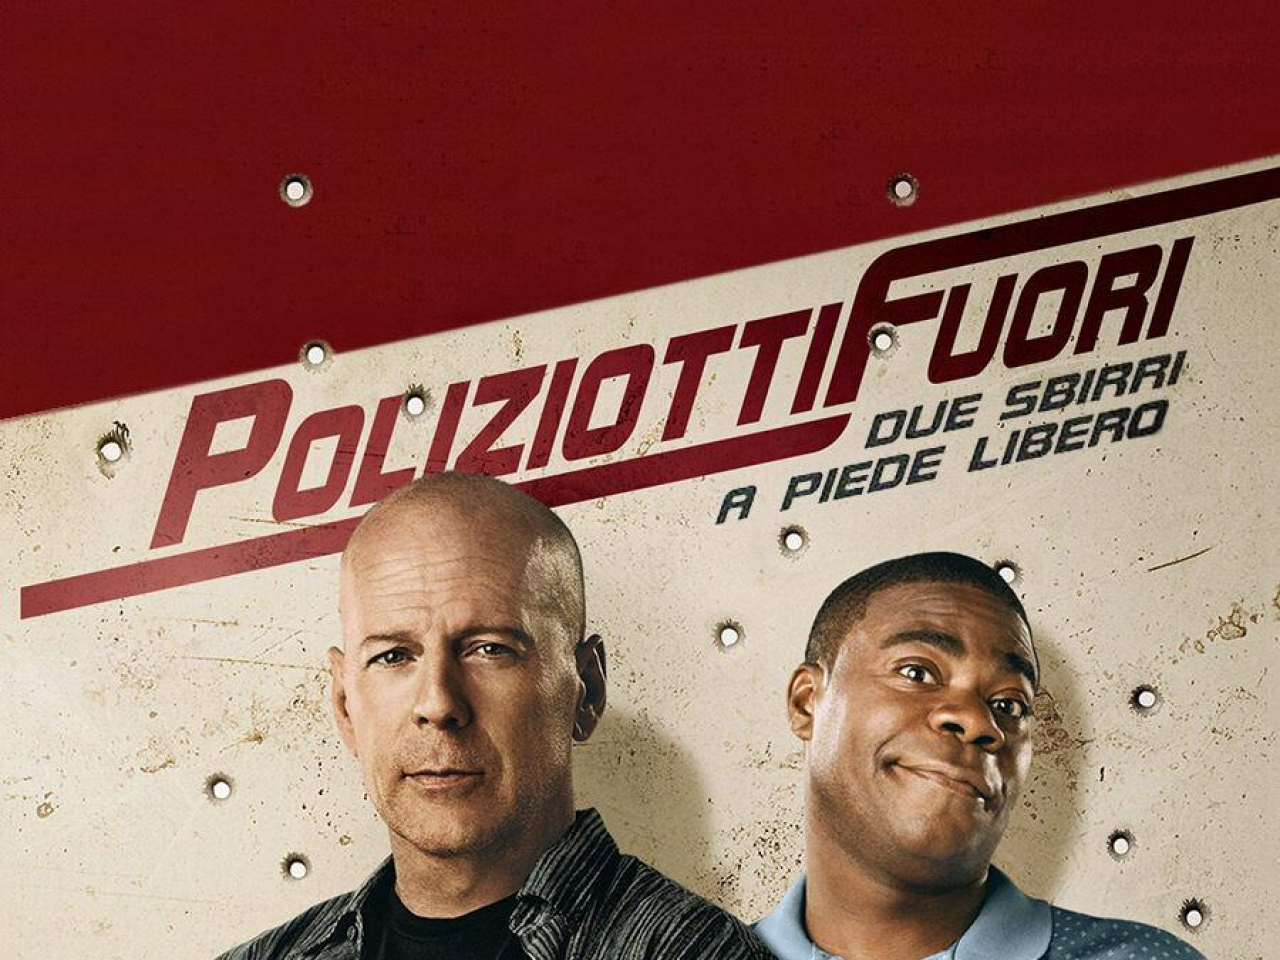 Poliziotti Fuori - Due Sbirri A Piede ..